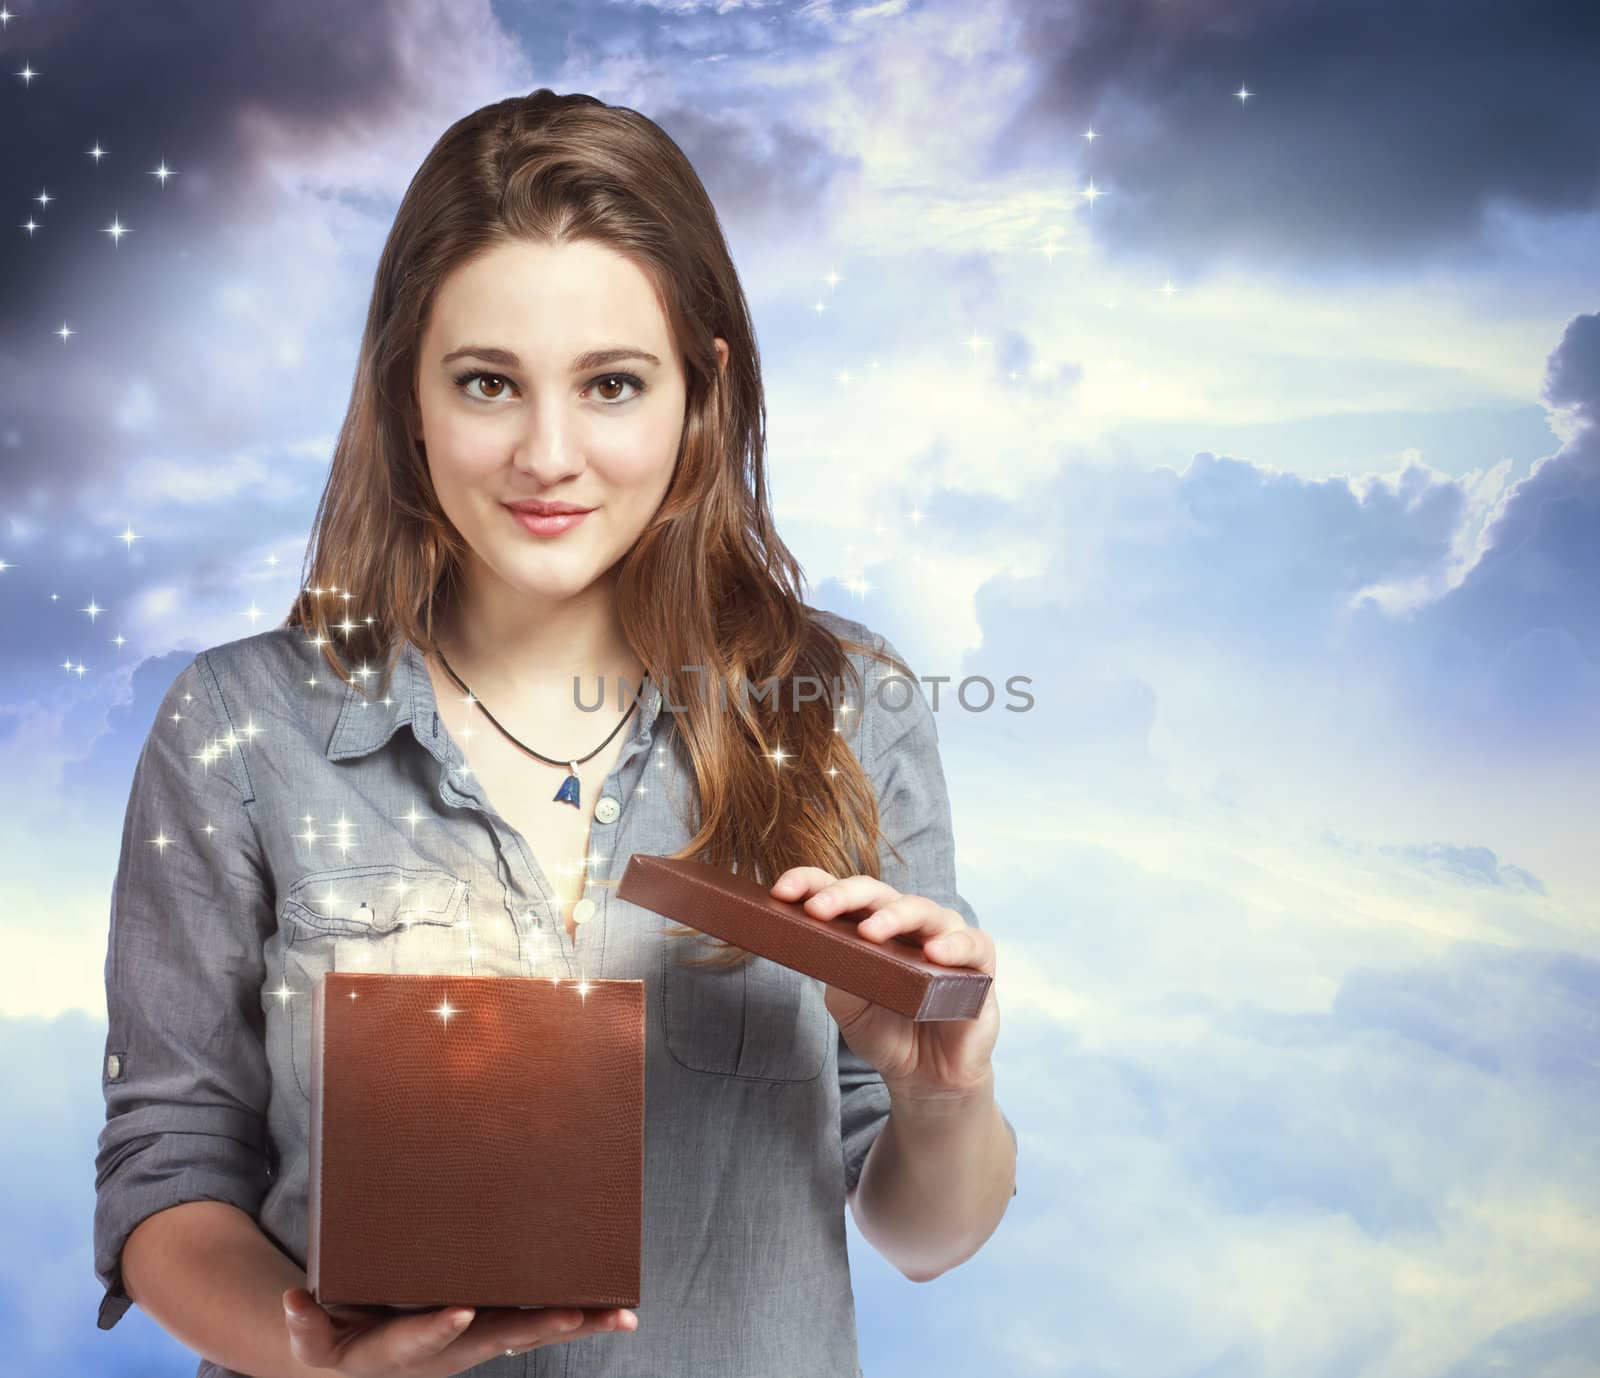 Beautiful Woman Opening a Gift Box by melpomene